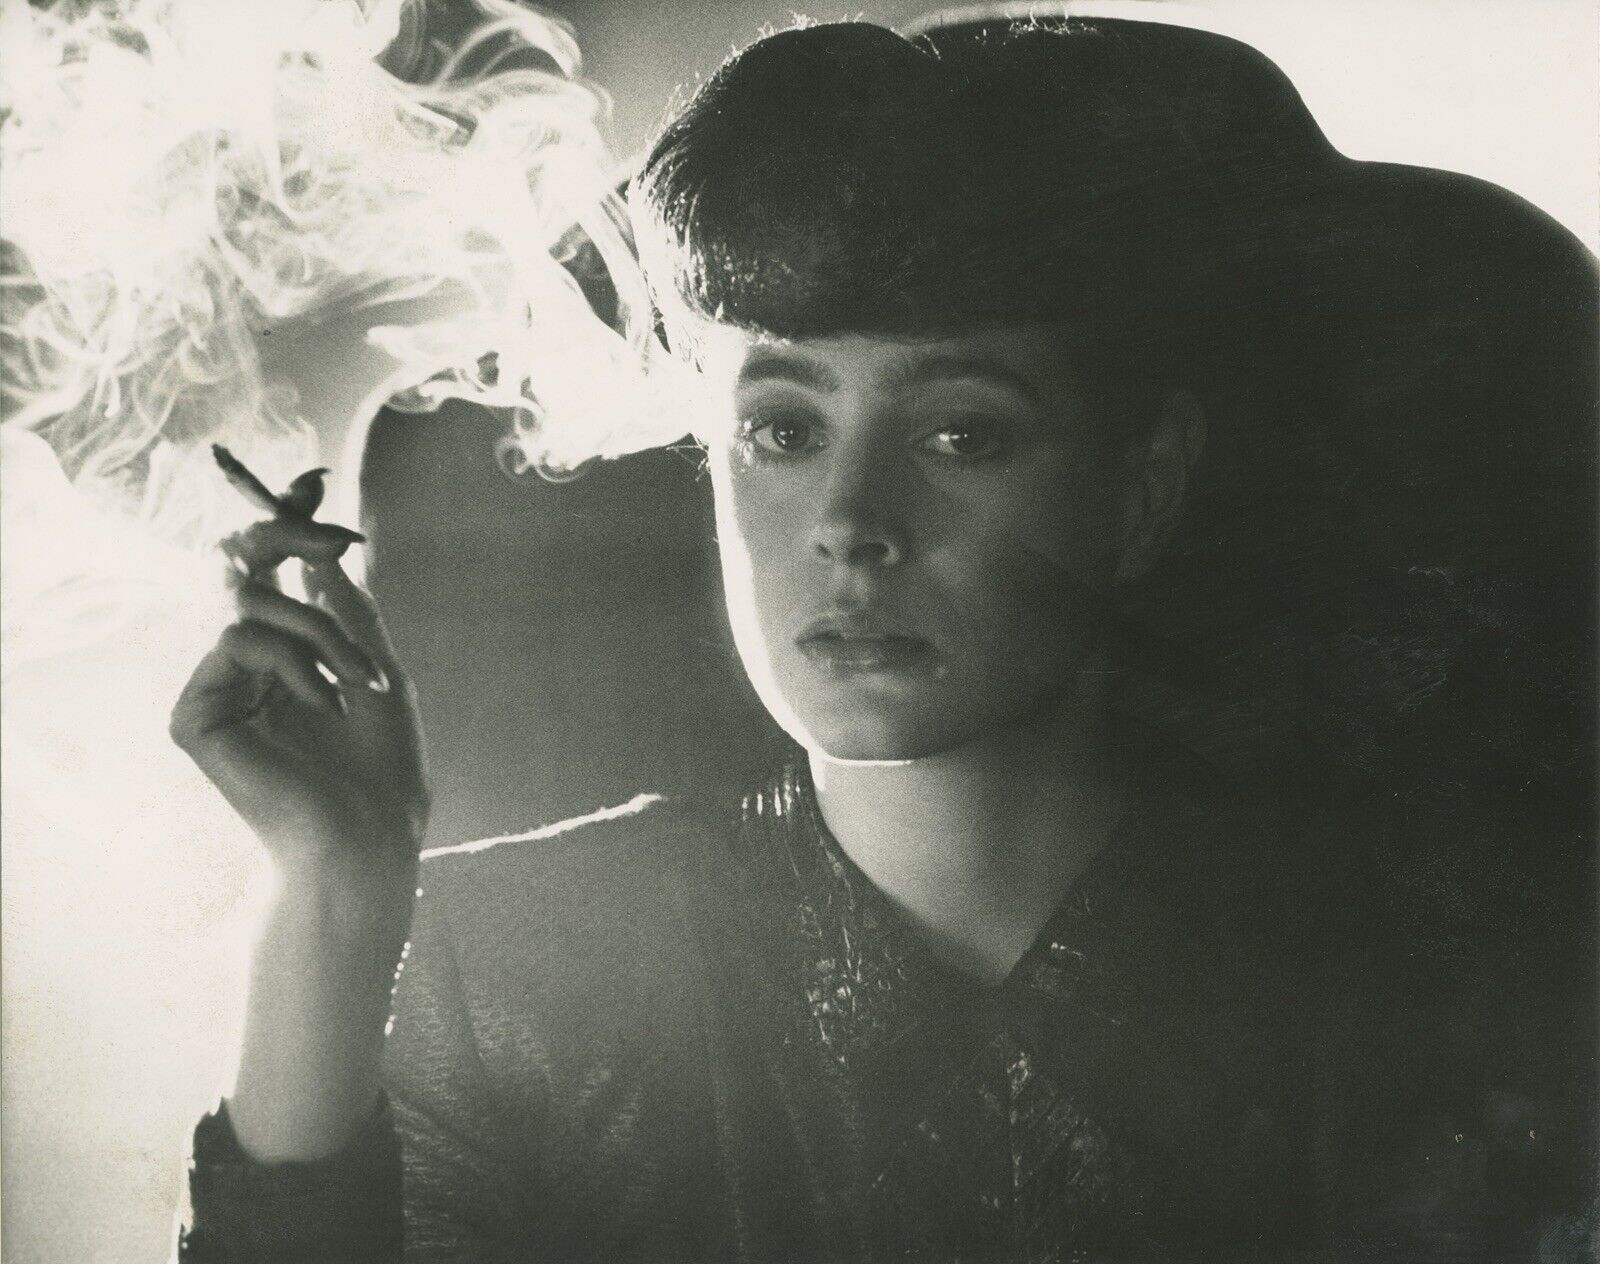 Sean Young in Blade Runner Smoking Cigarettes Actress Original Photo A2656 A26